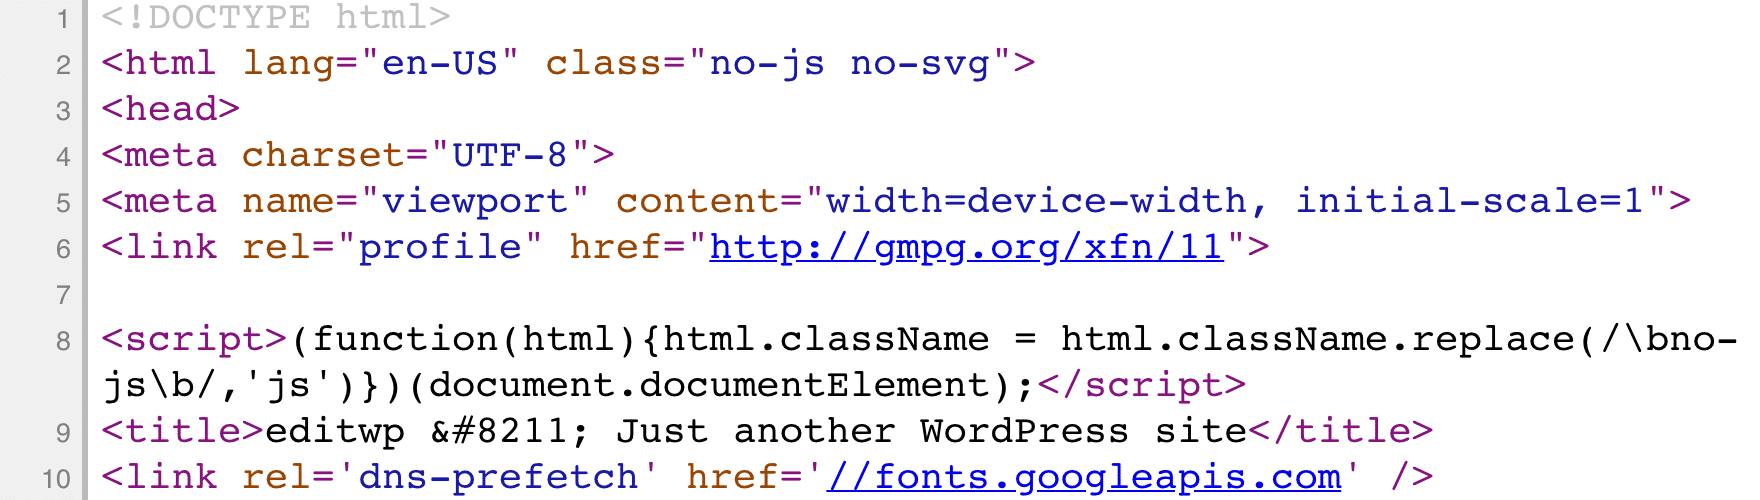 Código de HTML sin minificar